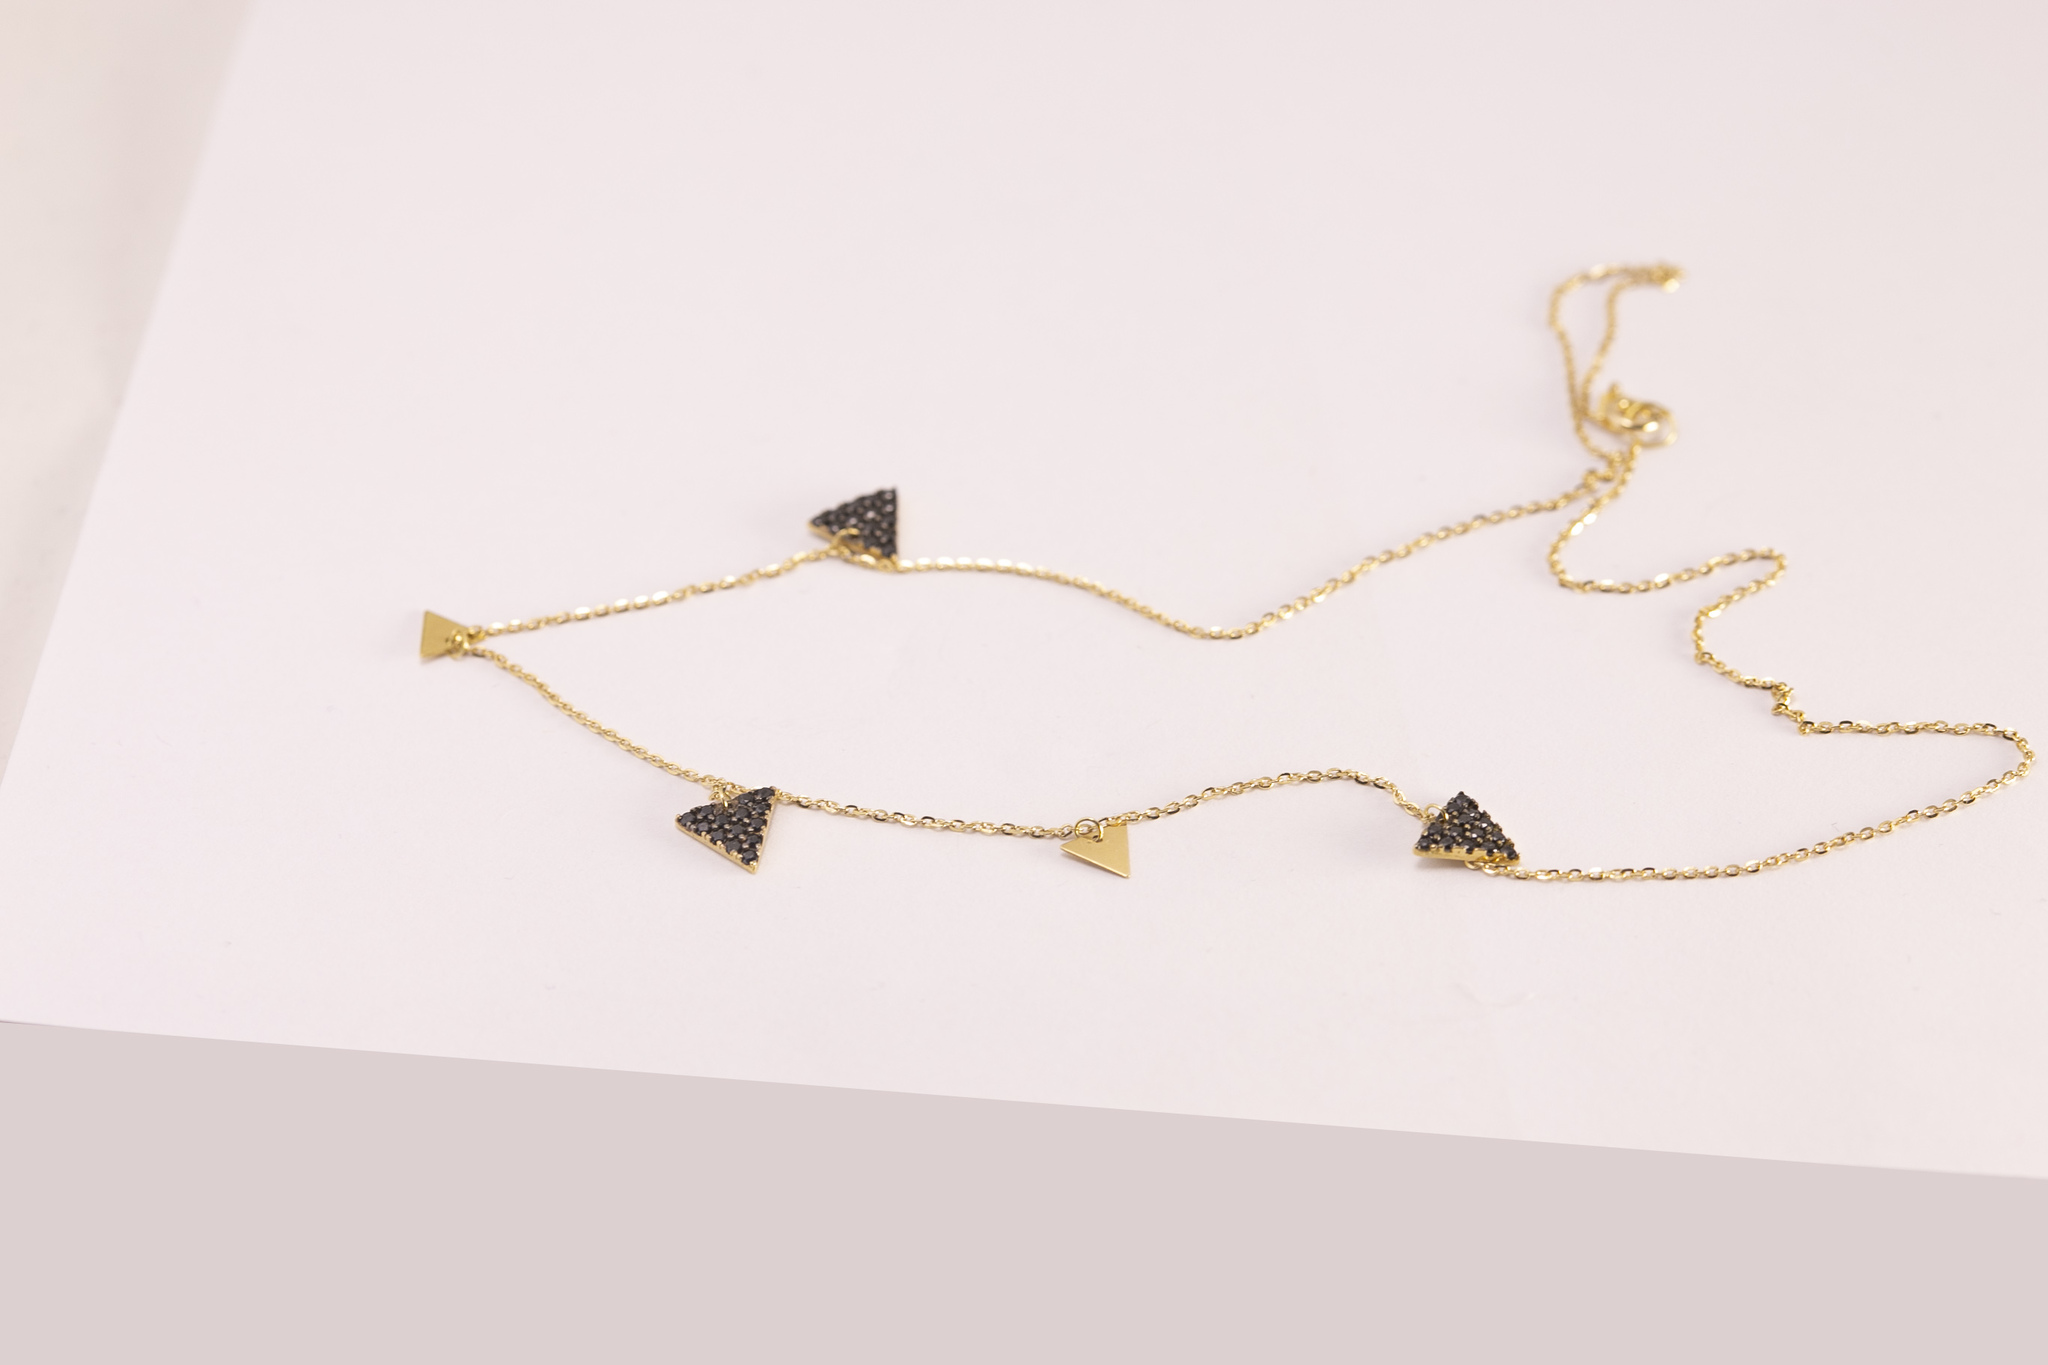 Halsband i 18 karat guld med svart zirkon sten